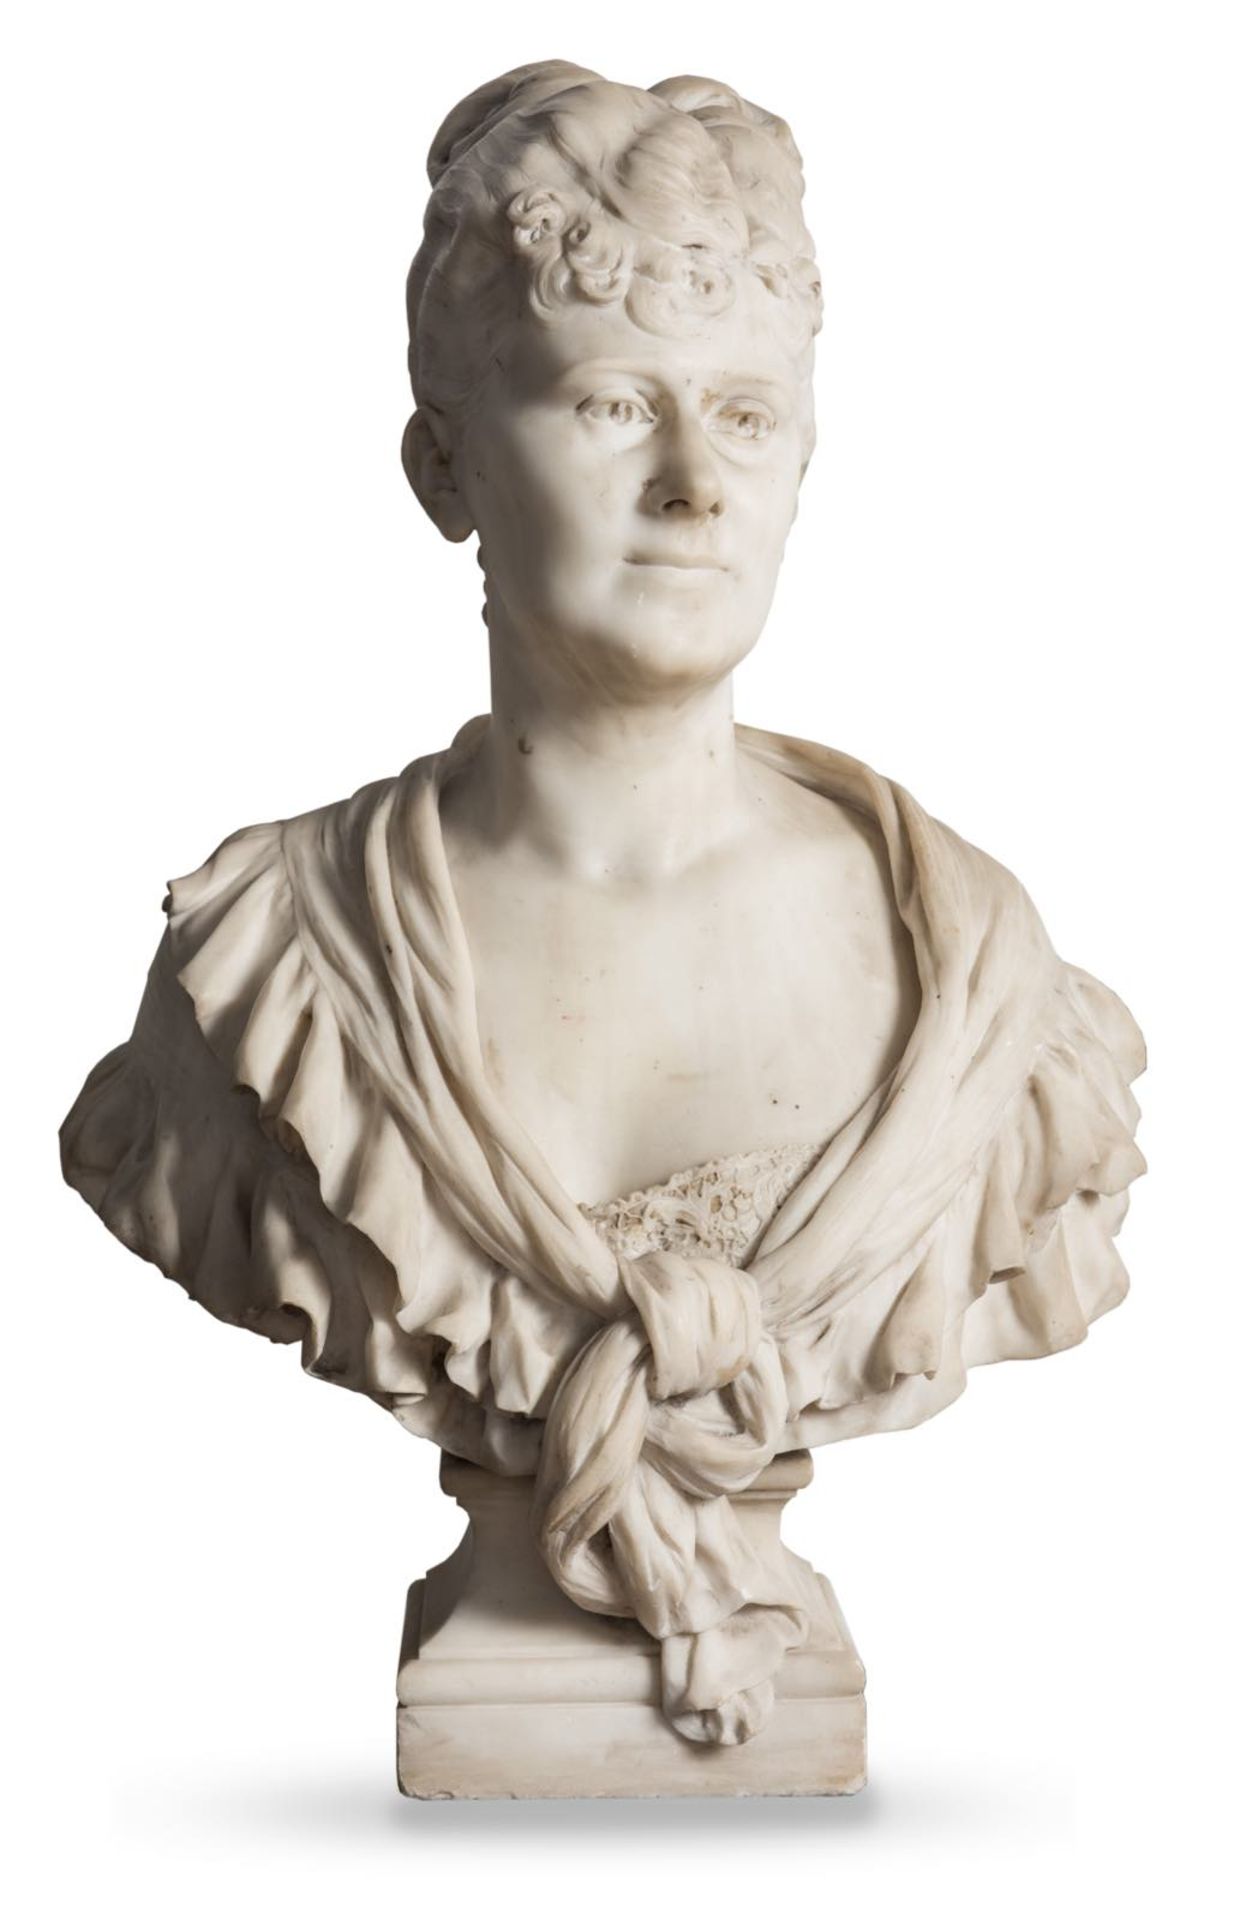 Eugène Delaplanche (1836 - 1891), attribuito a, “Busto di Nobildonna”, 1885.